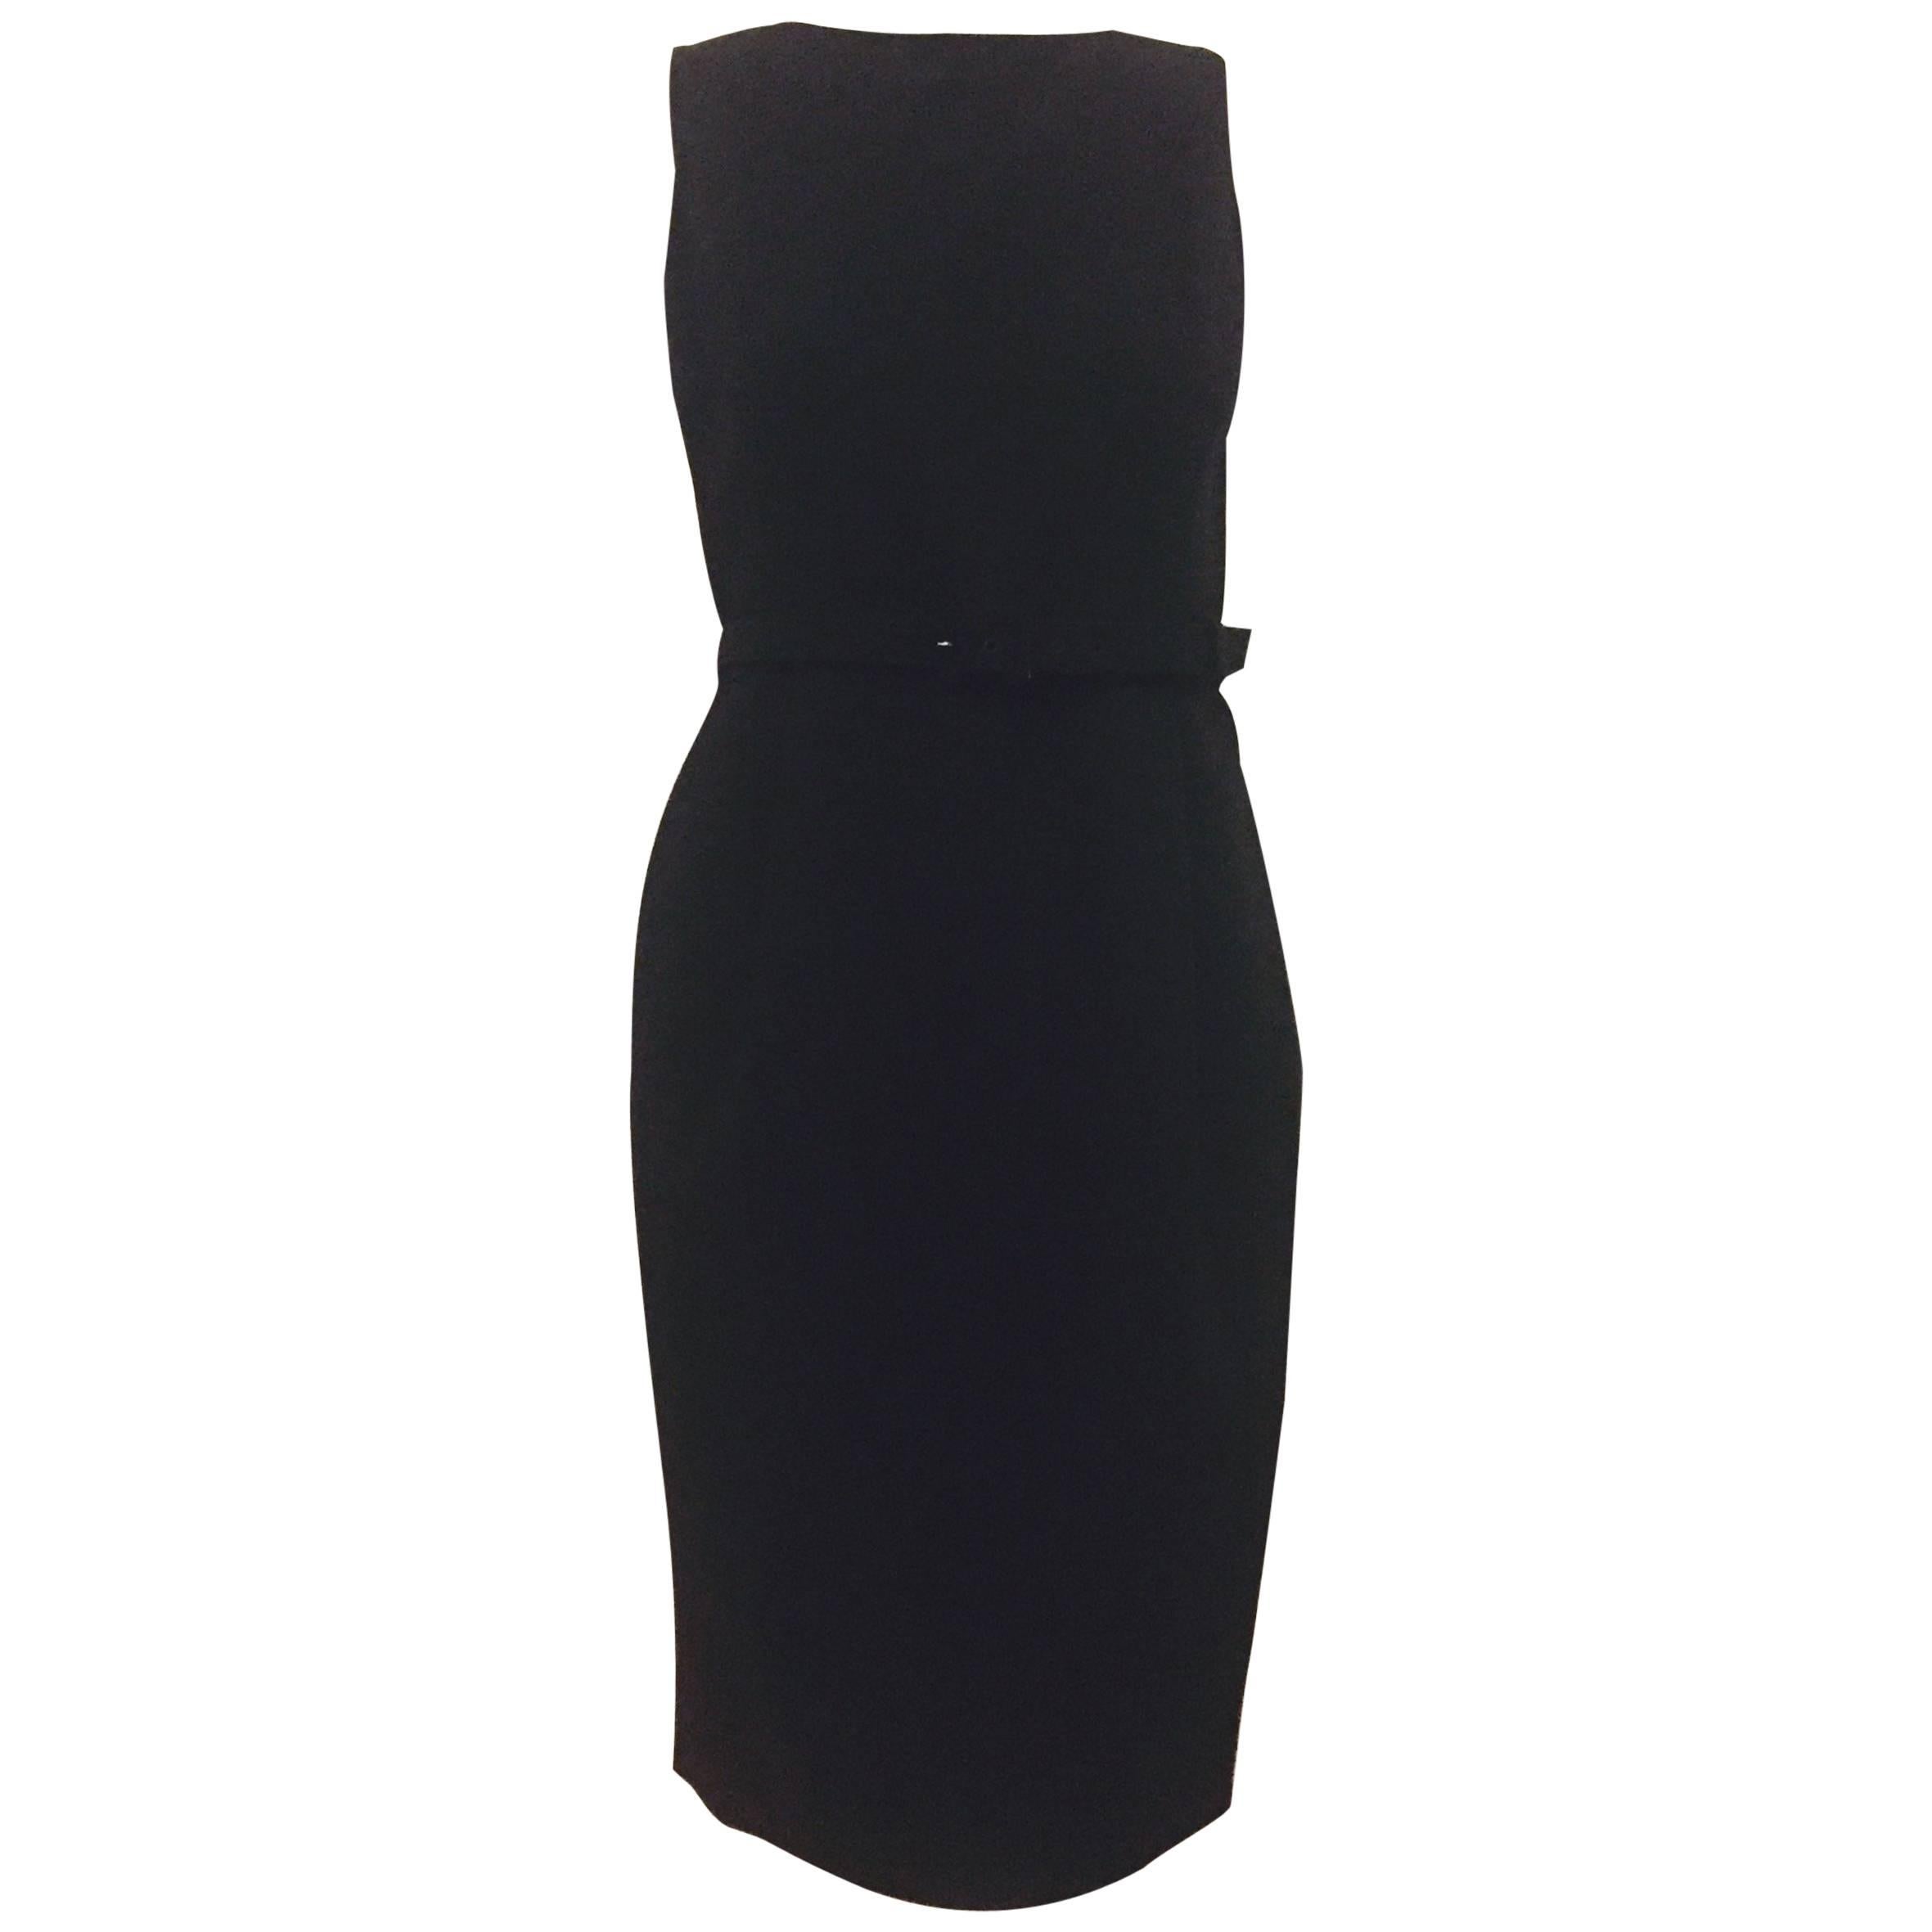  Oscar de la Renta's Little Black Wool Dress With Alluring Low Back For Sale